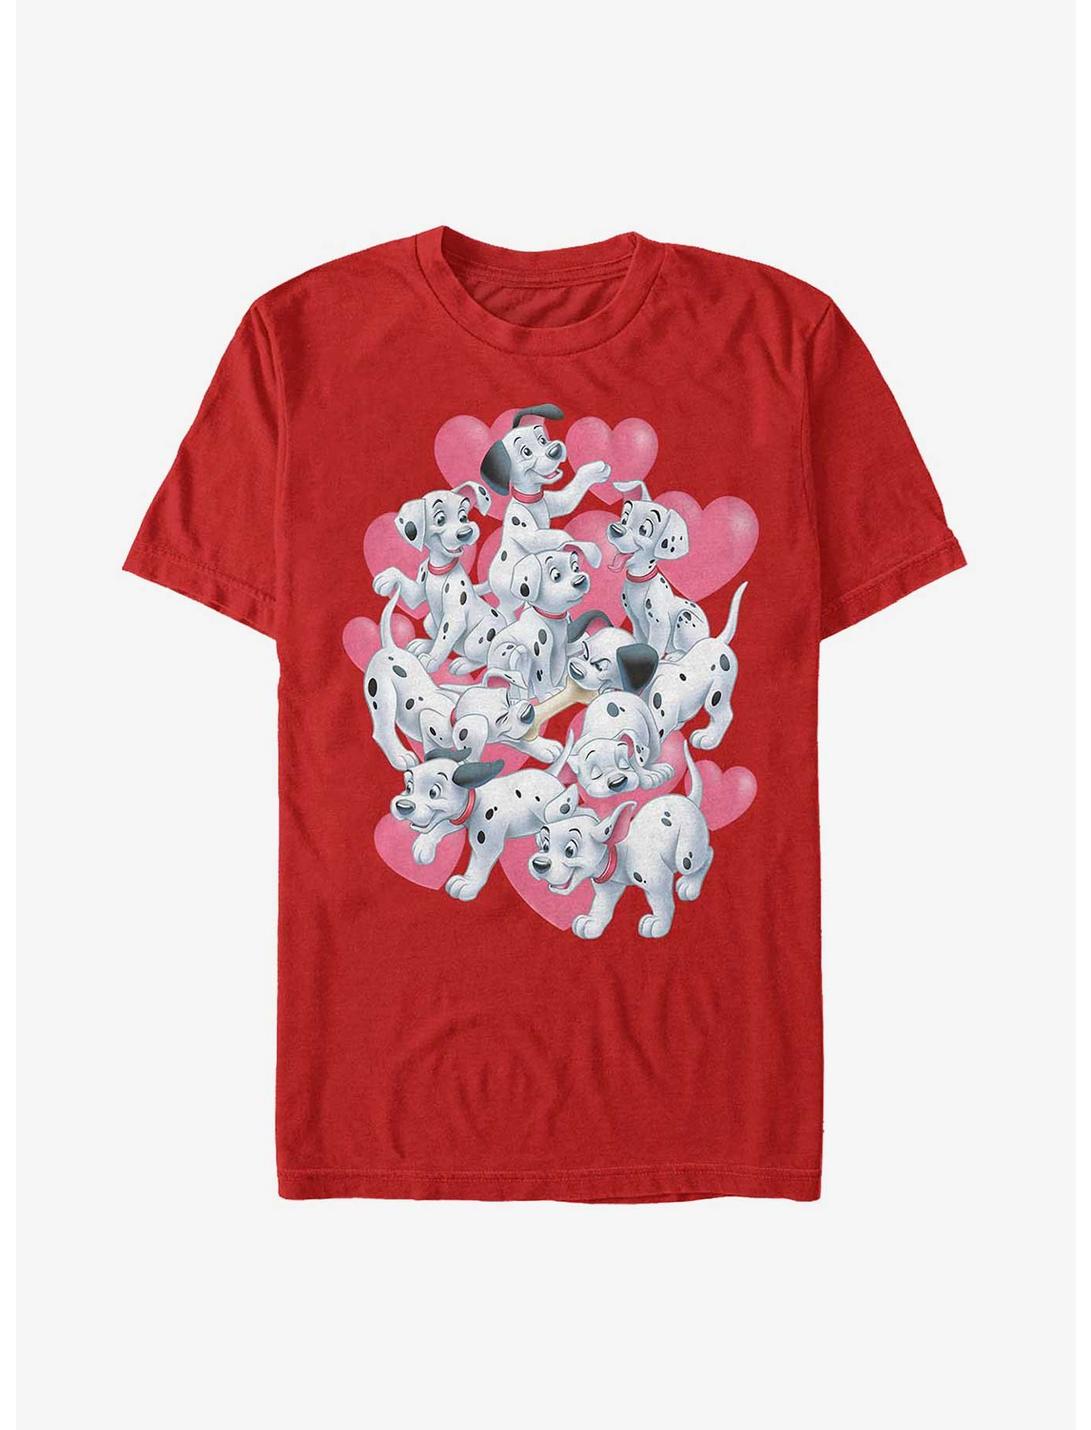 Disney 101 Dalmatians Hearts Group T-Shirt, RED, hi-res